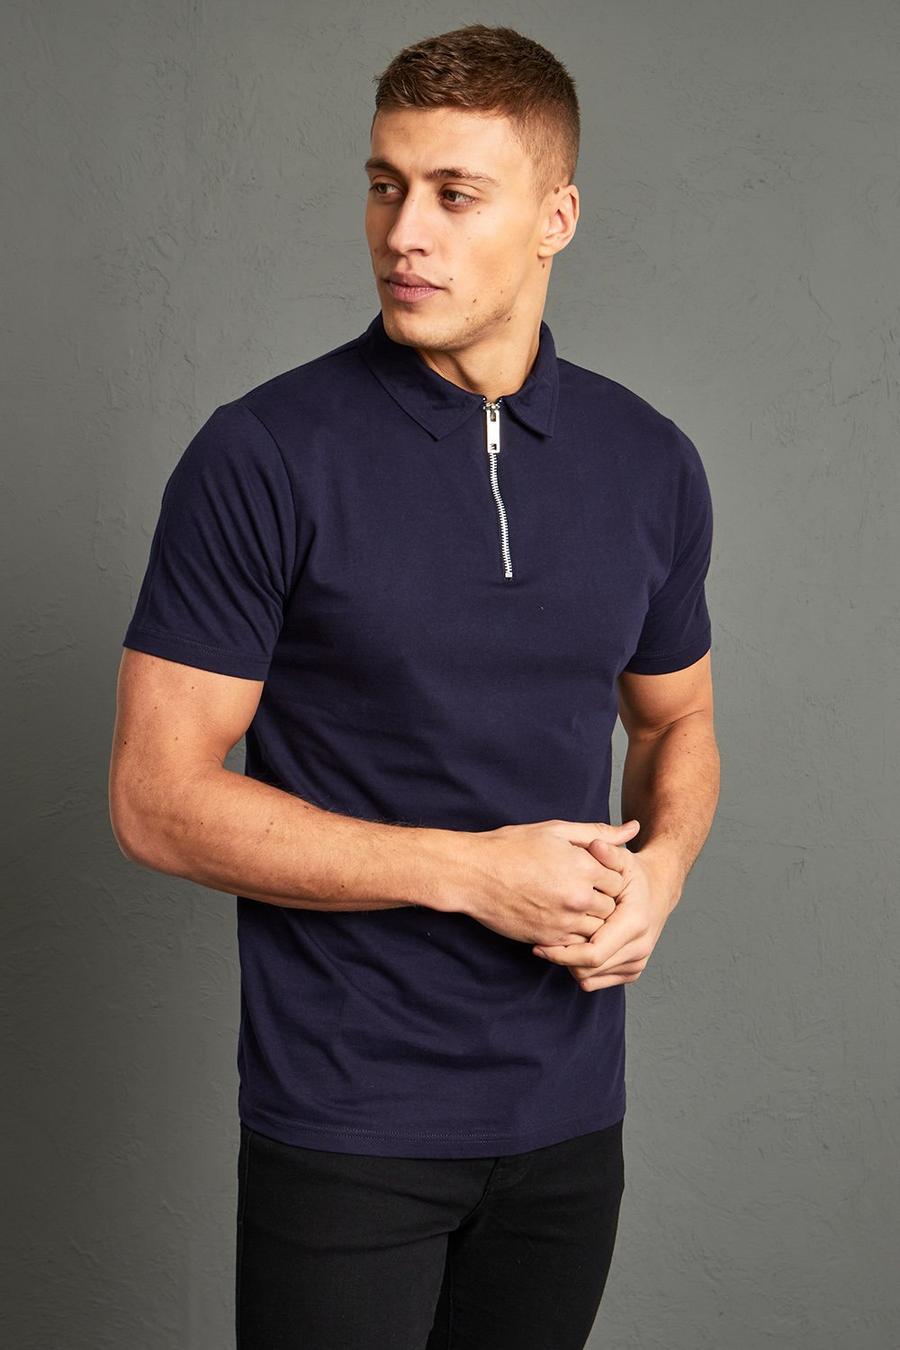 Kurzärmliges Slim-Fit Poloshirt mit Reißverschluss, Navy